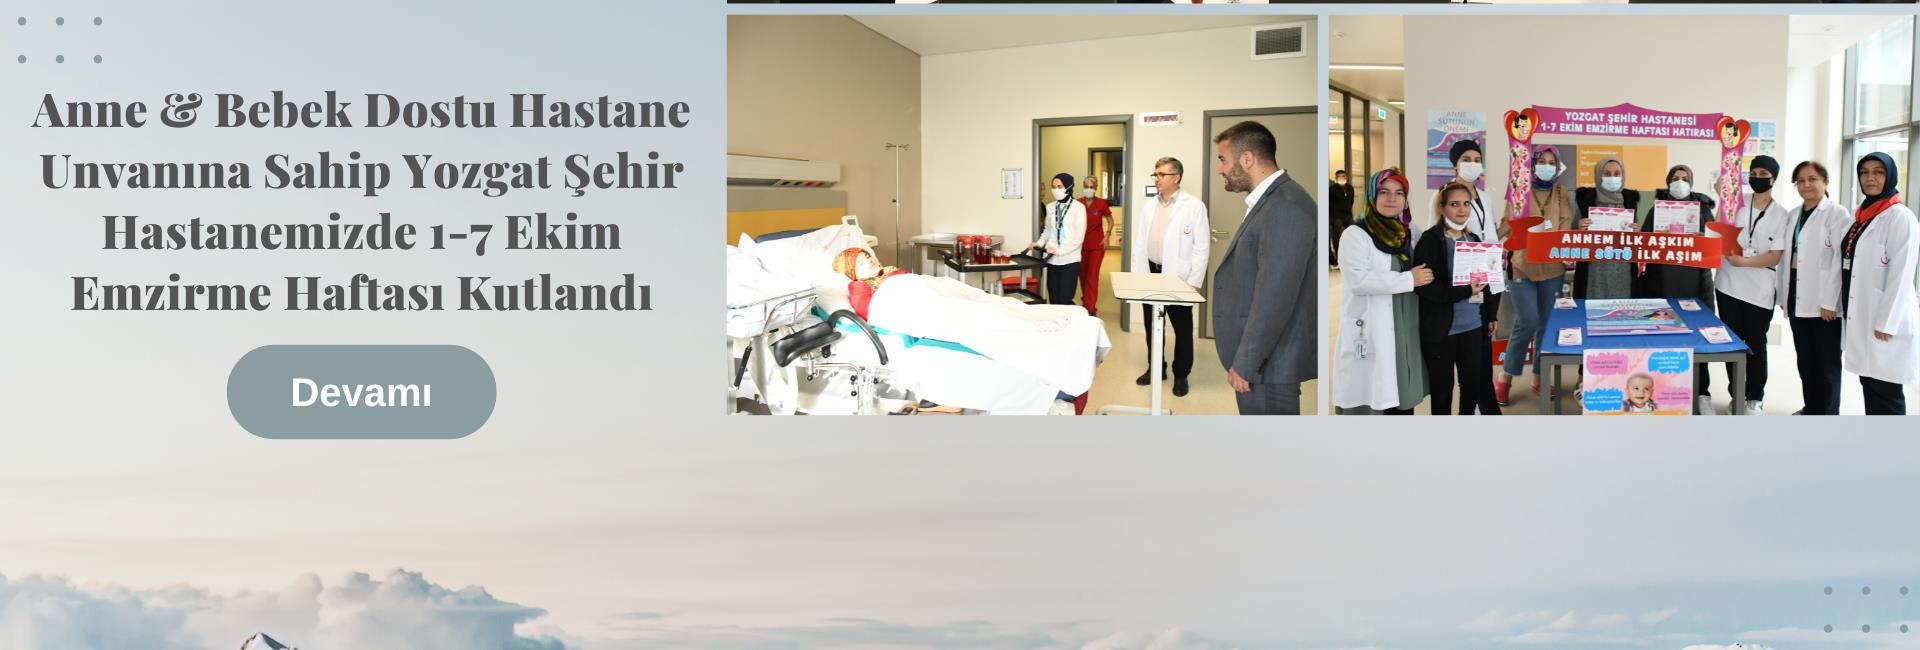 Anne & Bebek Dostu Hastane unvanına sahip Yozgat Şehir Hastanemizde 1-7 Ekim Emzirme Haftası Kutlandı.